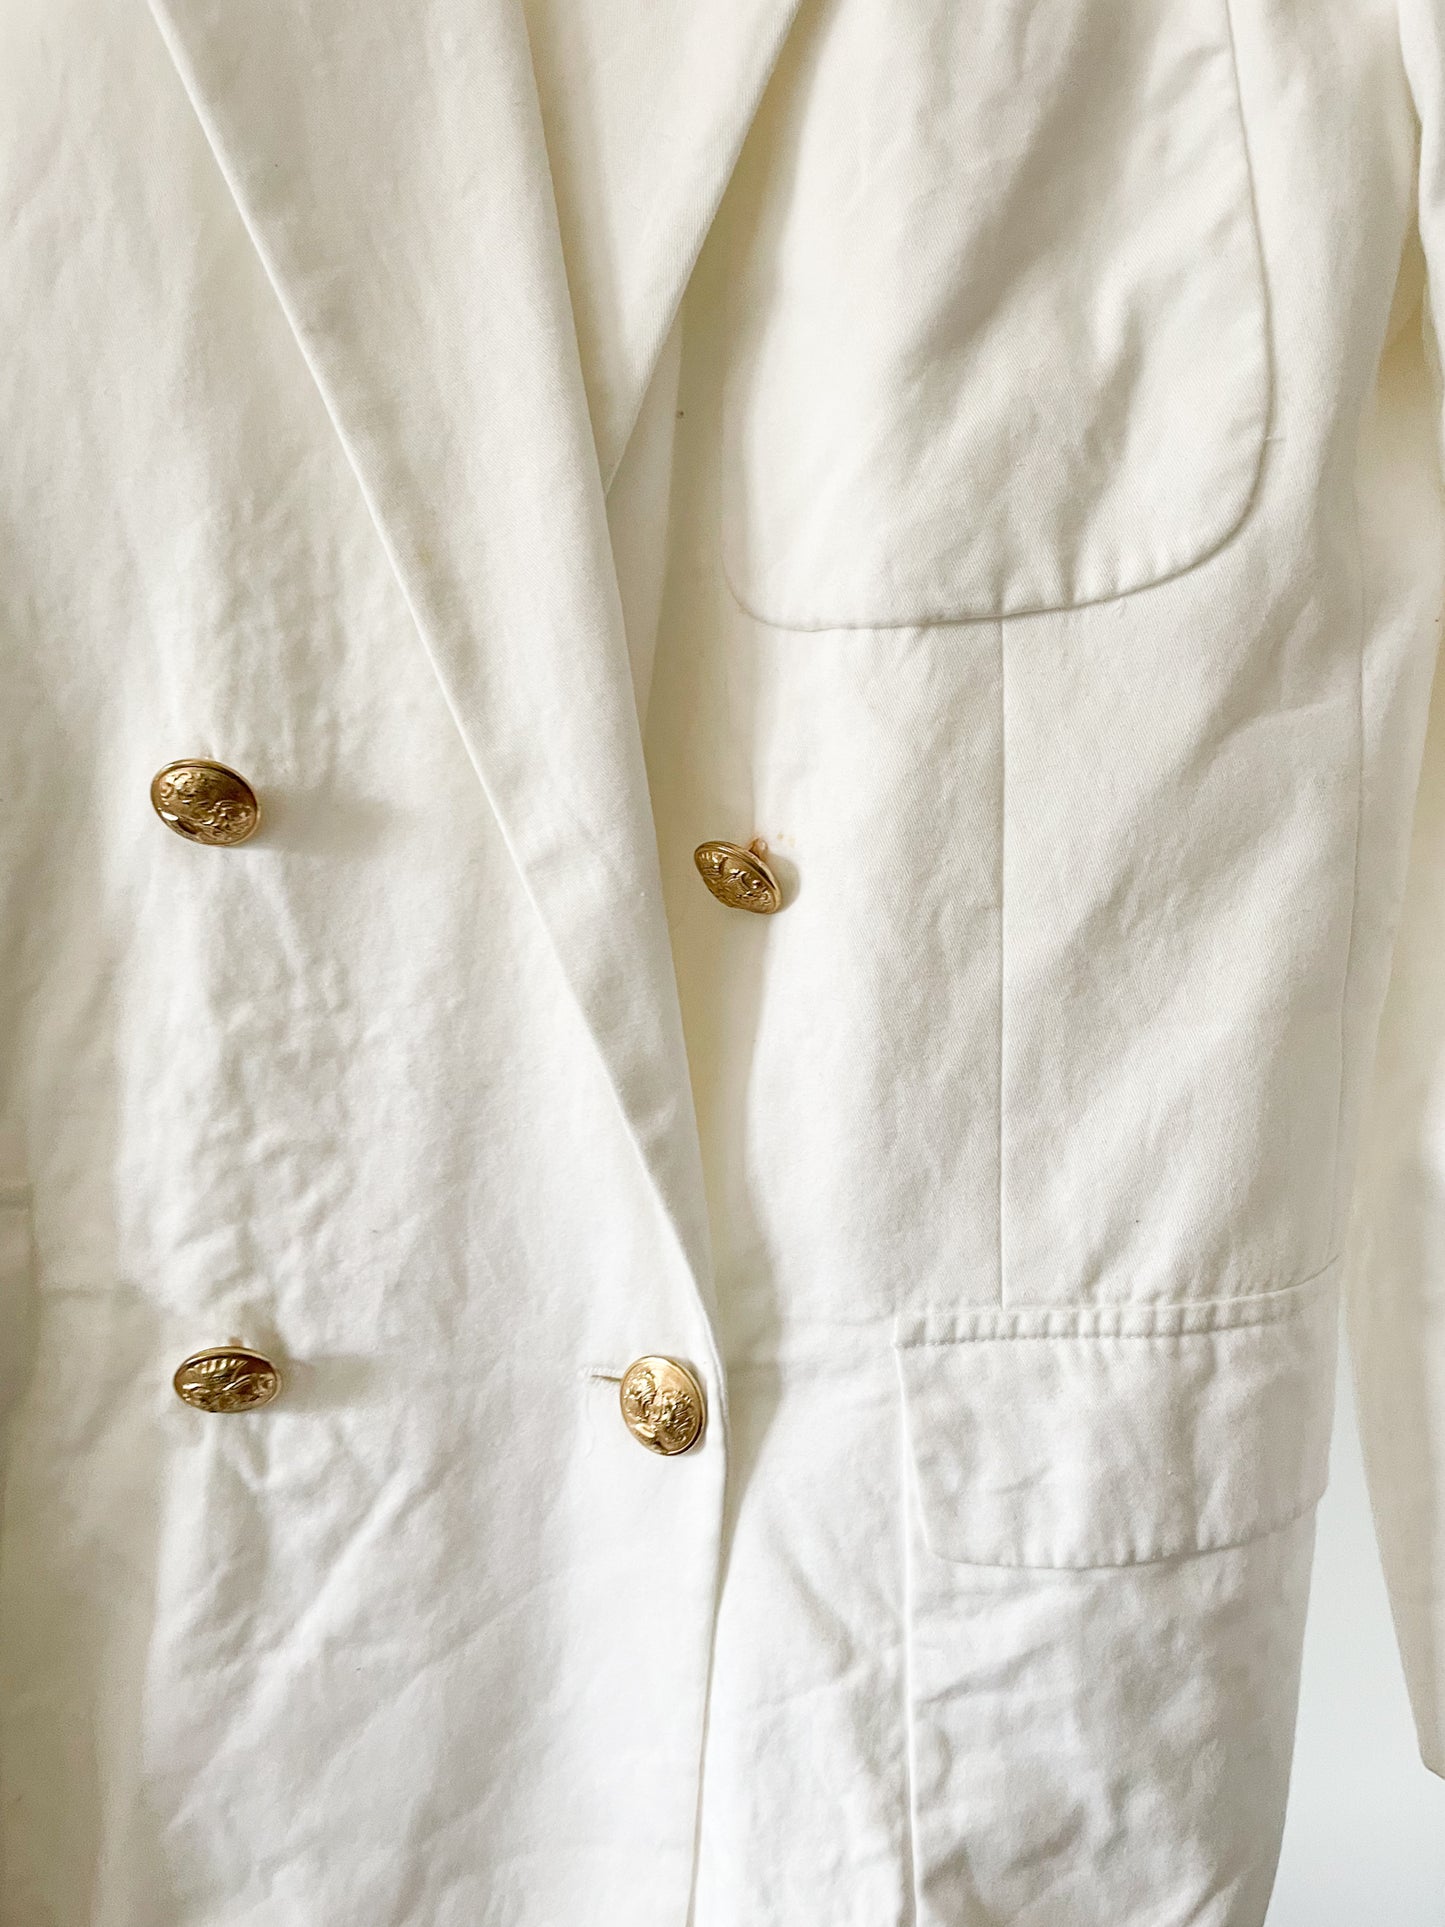 Ralph Lauren Vintage White 100% Cotton Gold Button Blazer - Size 12